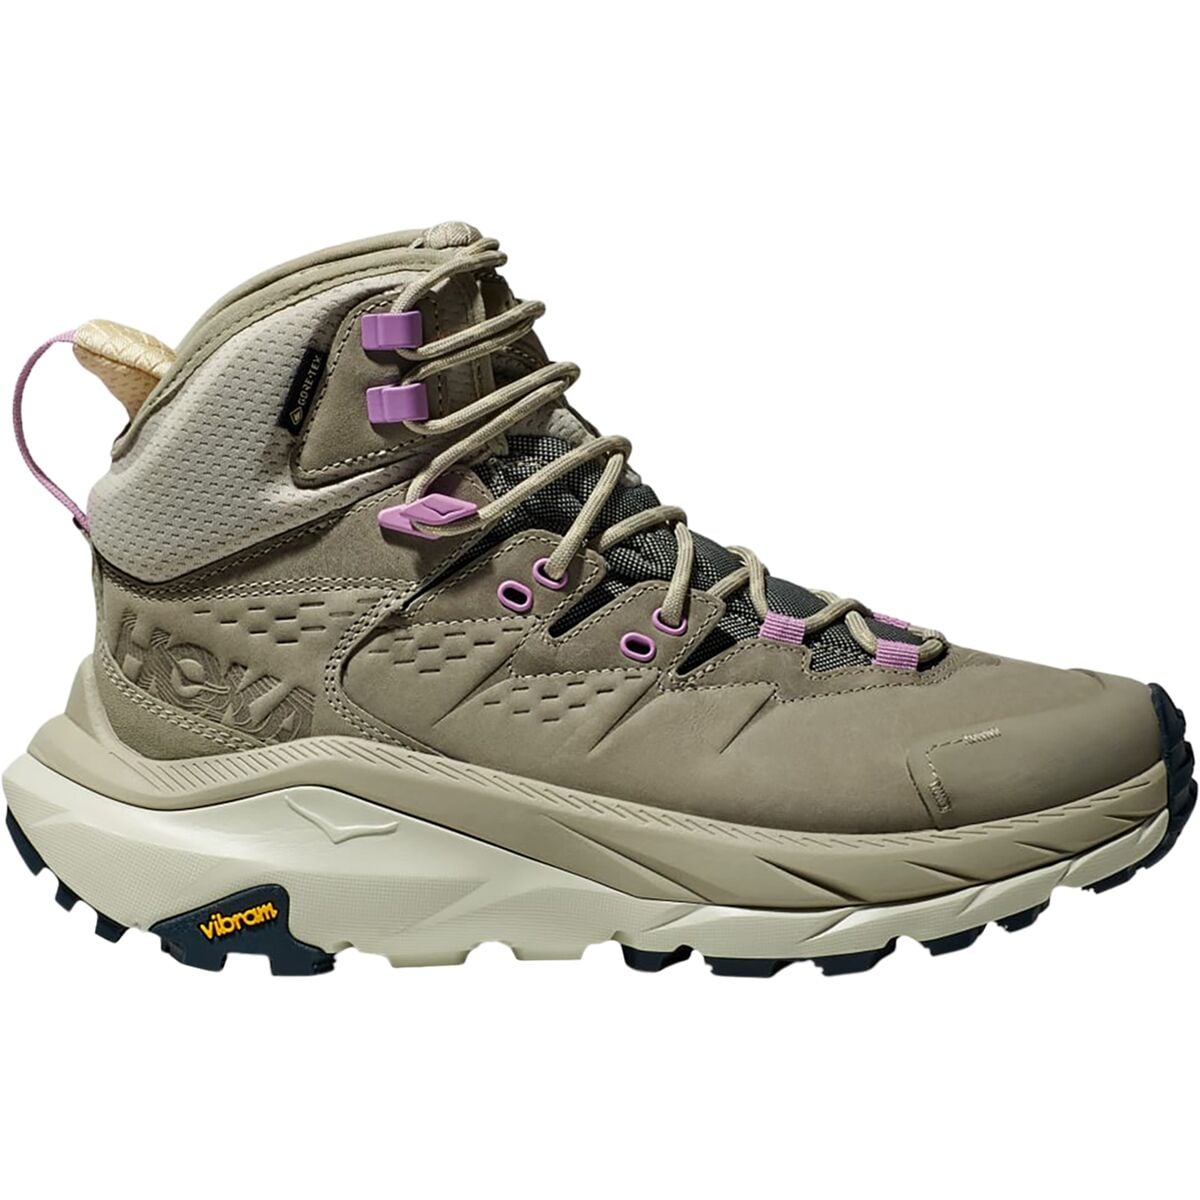 Kaha 2 GTX Hiking Boot - Women